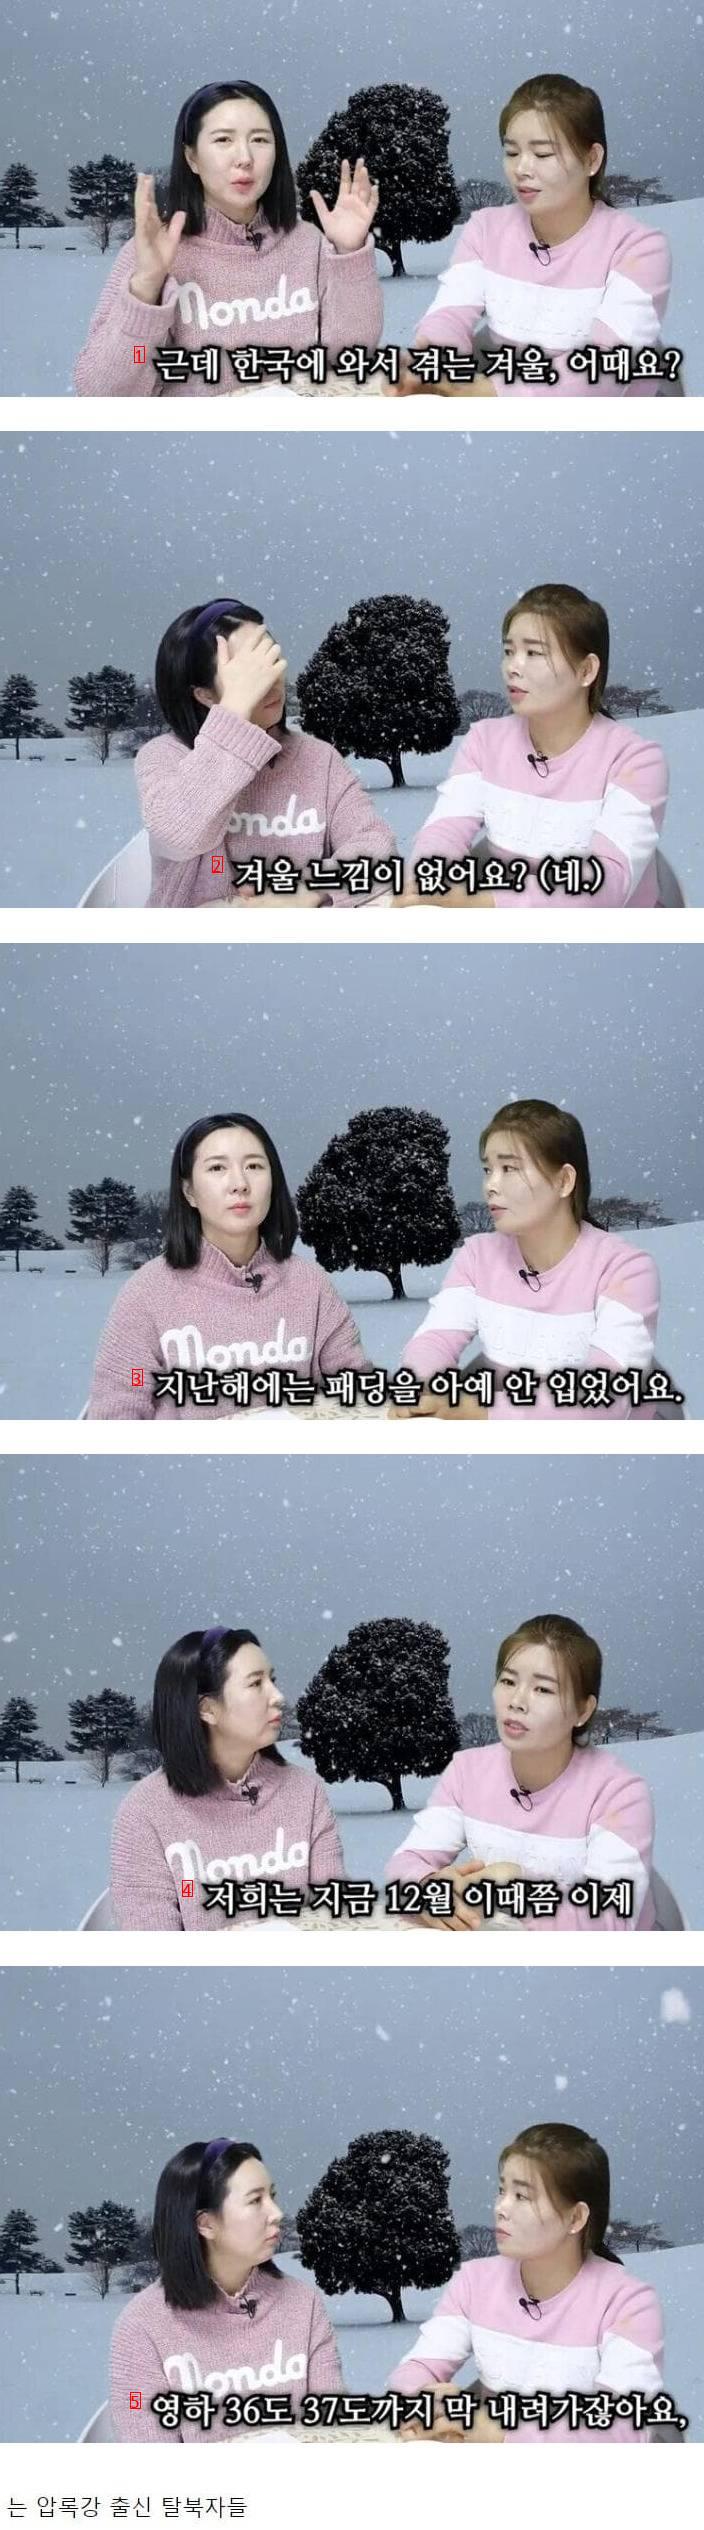 韓国の冬は何が寒いかという人